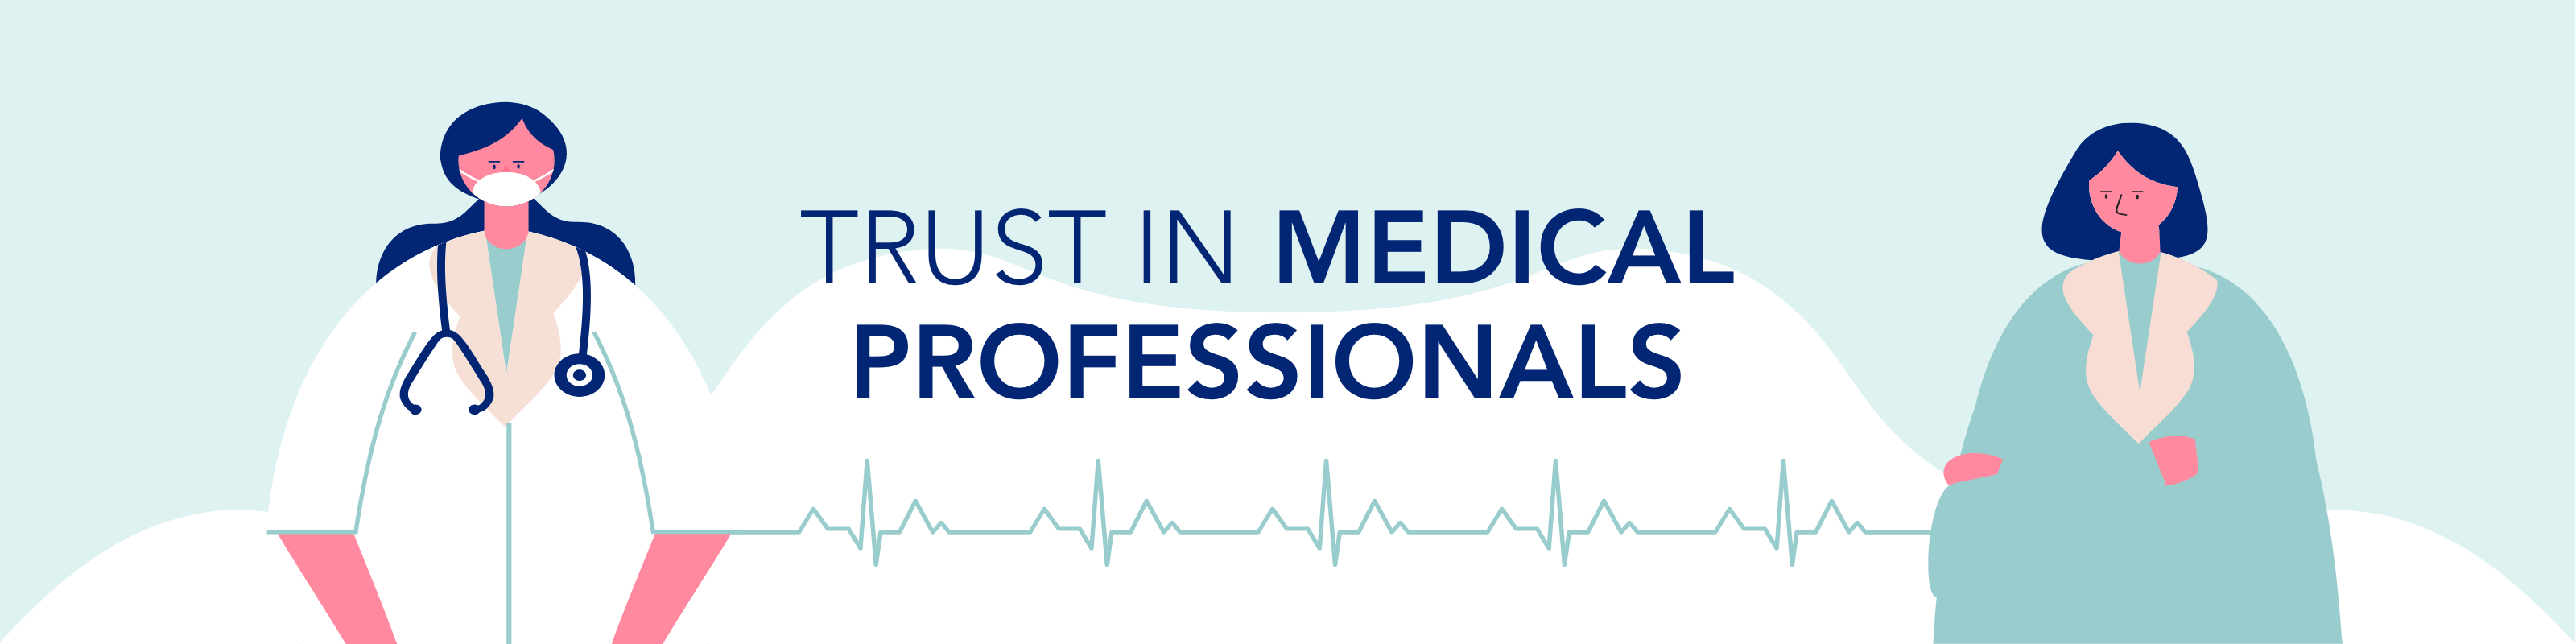 Trust in medical professionals